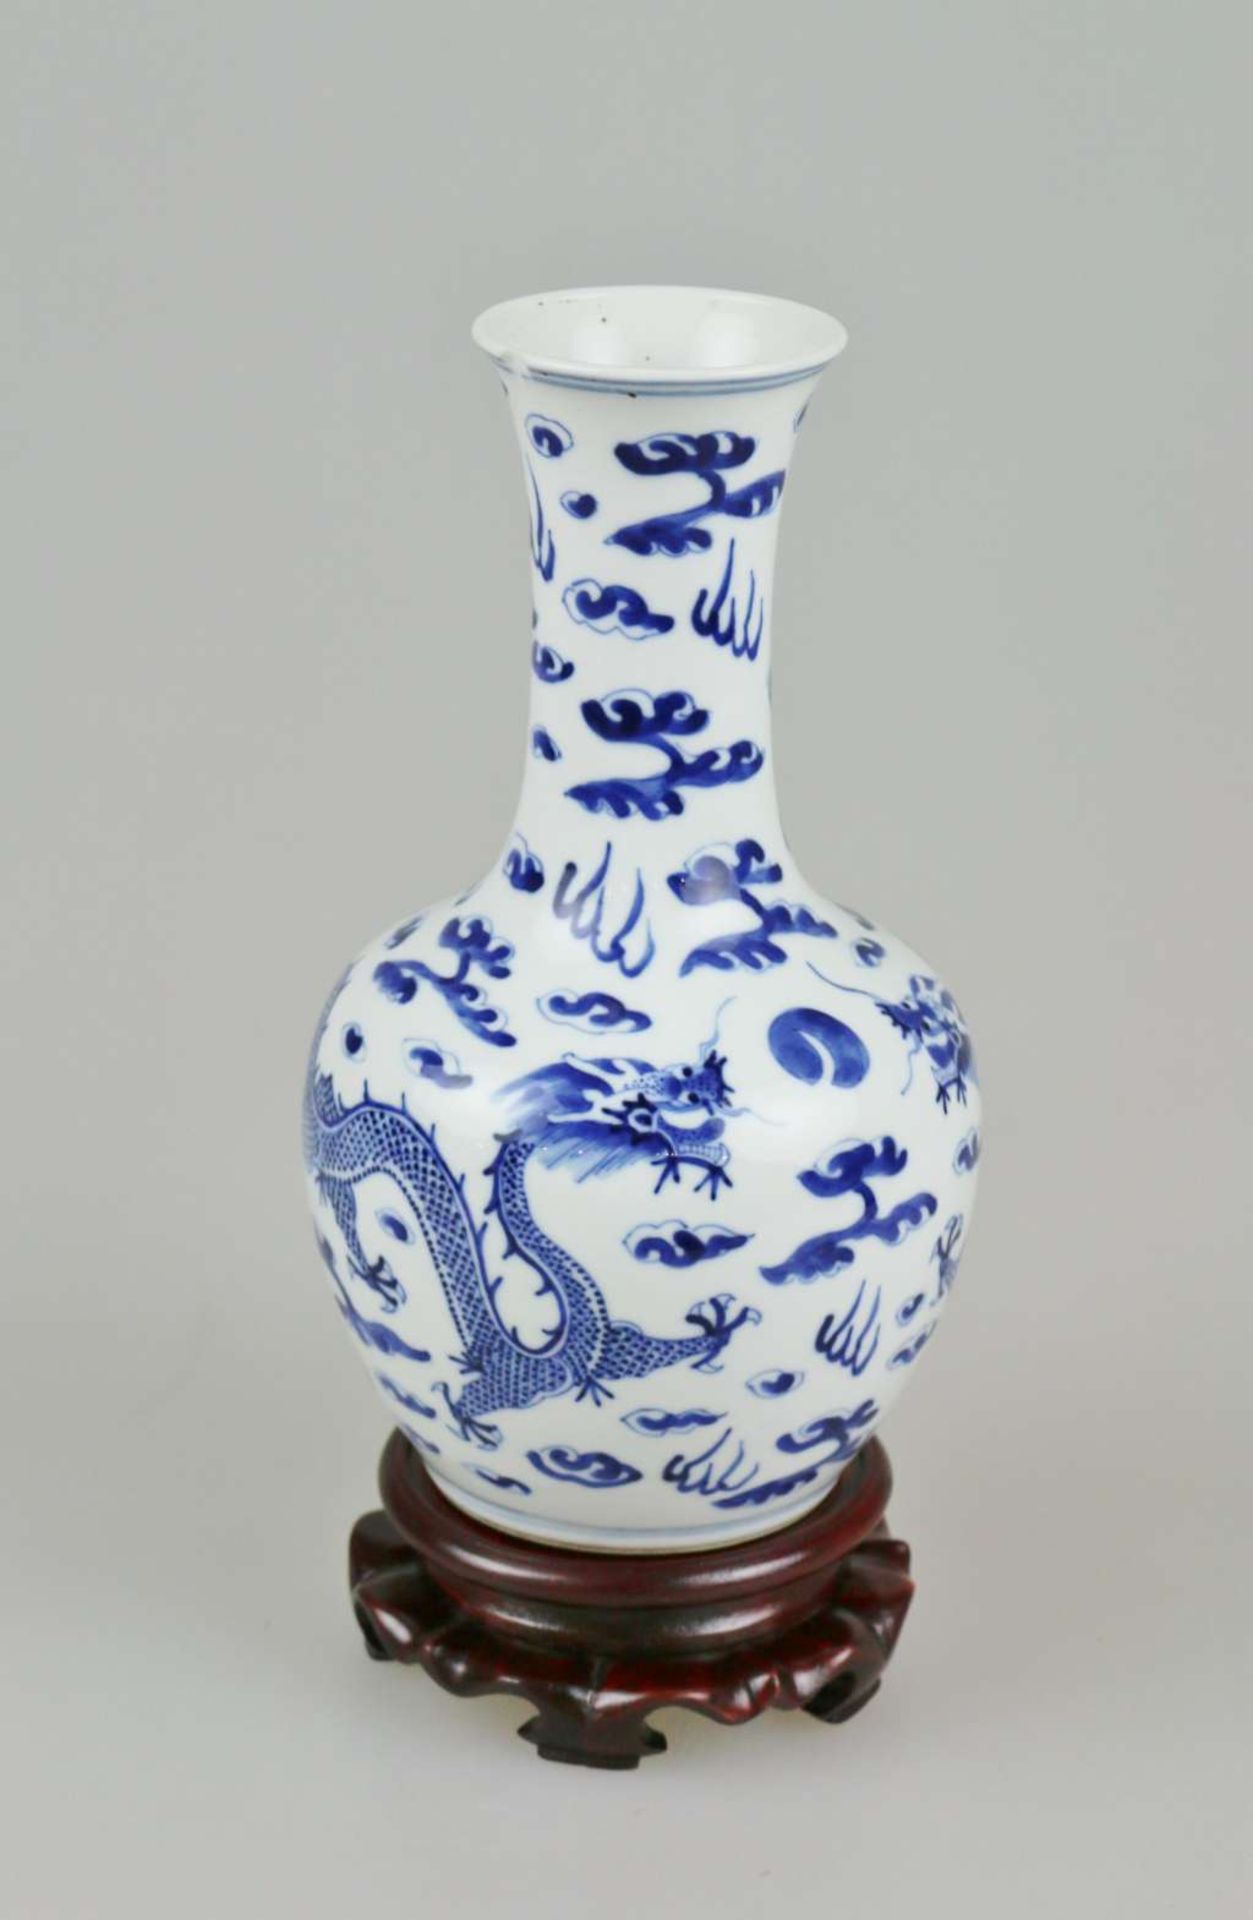 Flaschenvase mit Blau-Weiß-Malerei